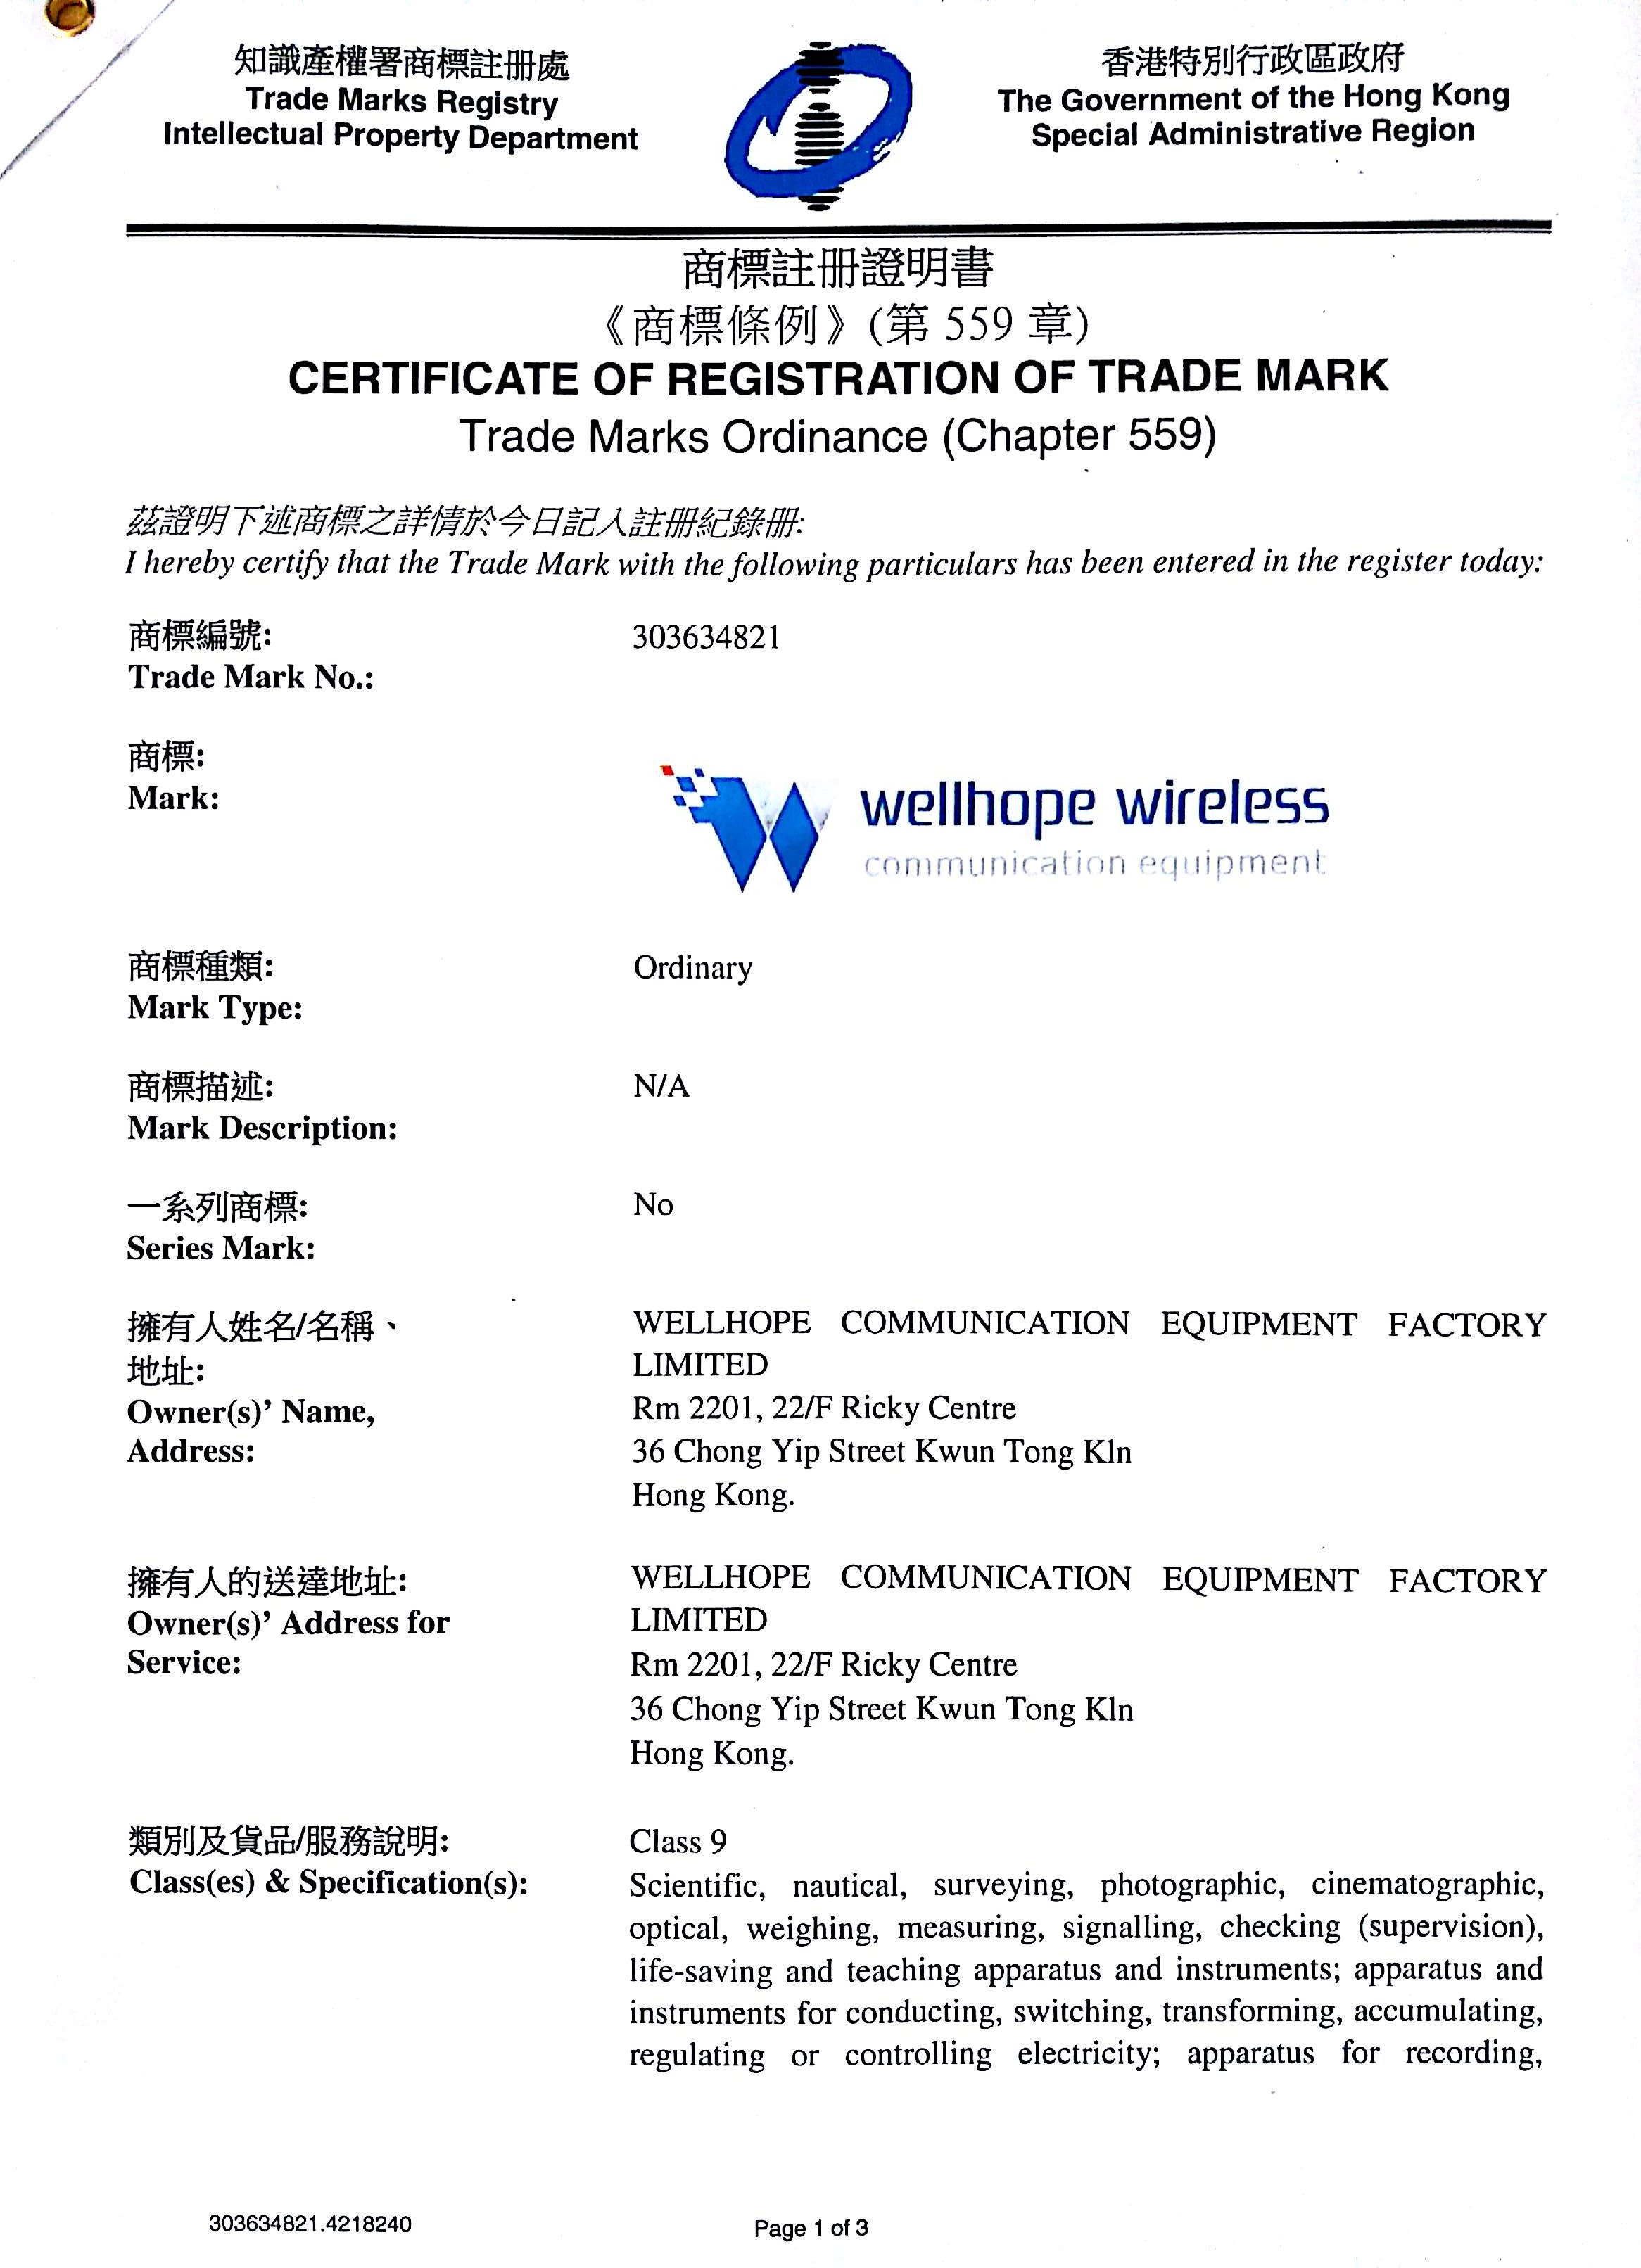 wellhope wireless trademark have regisitered 